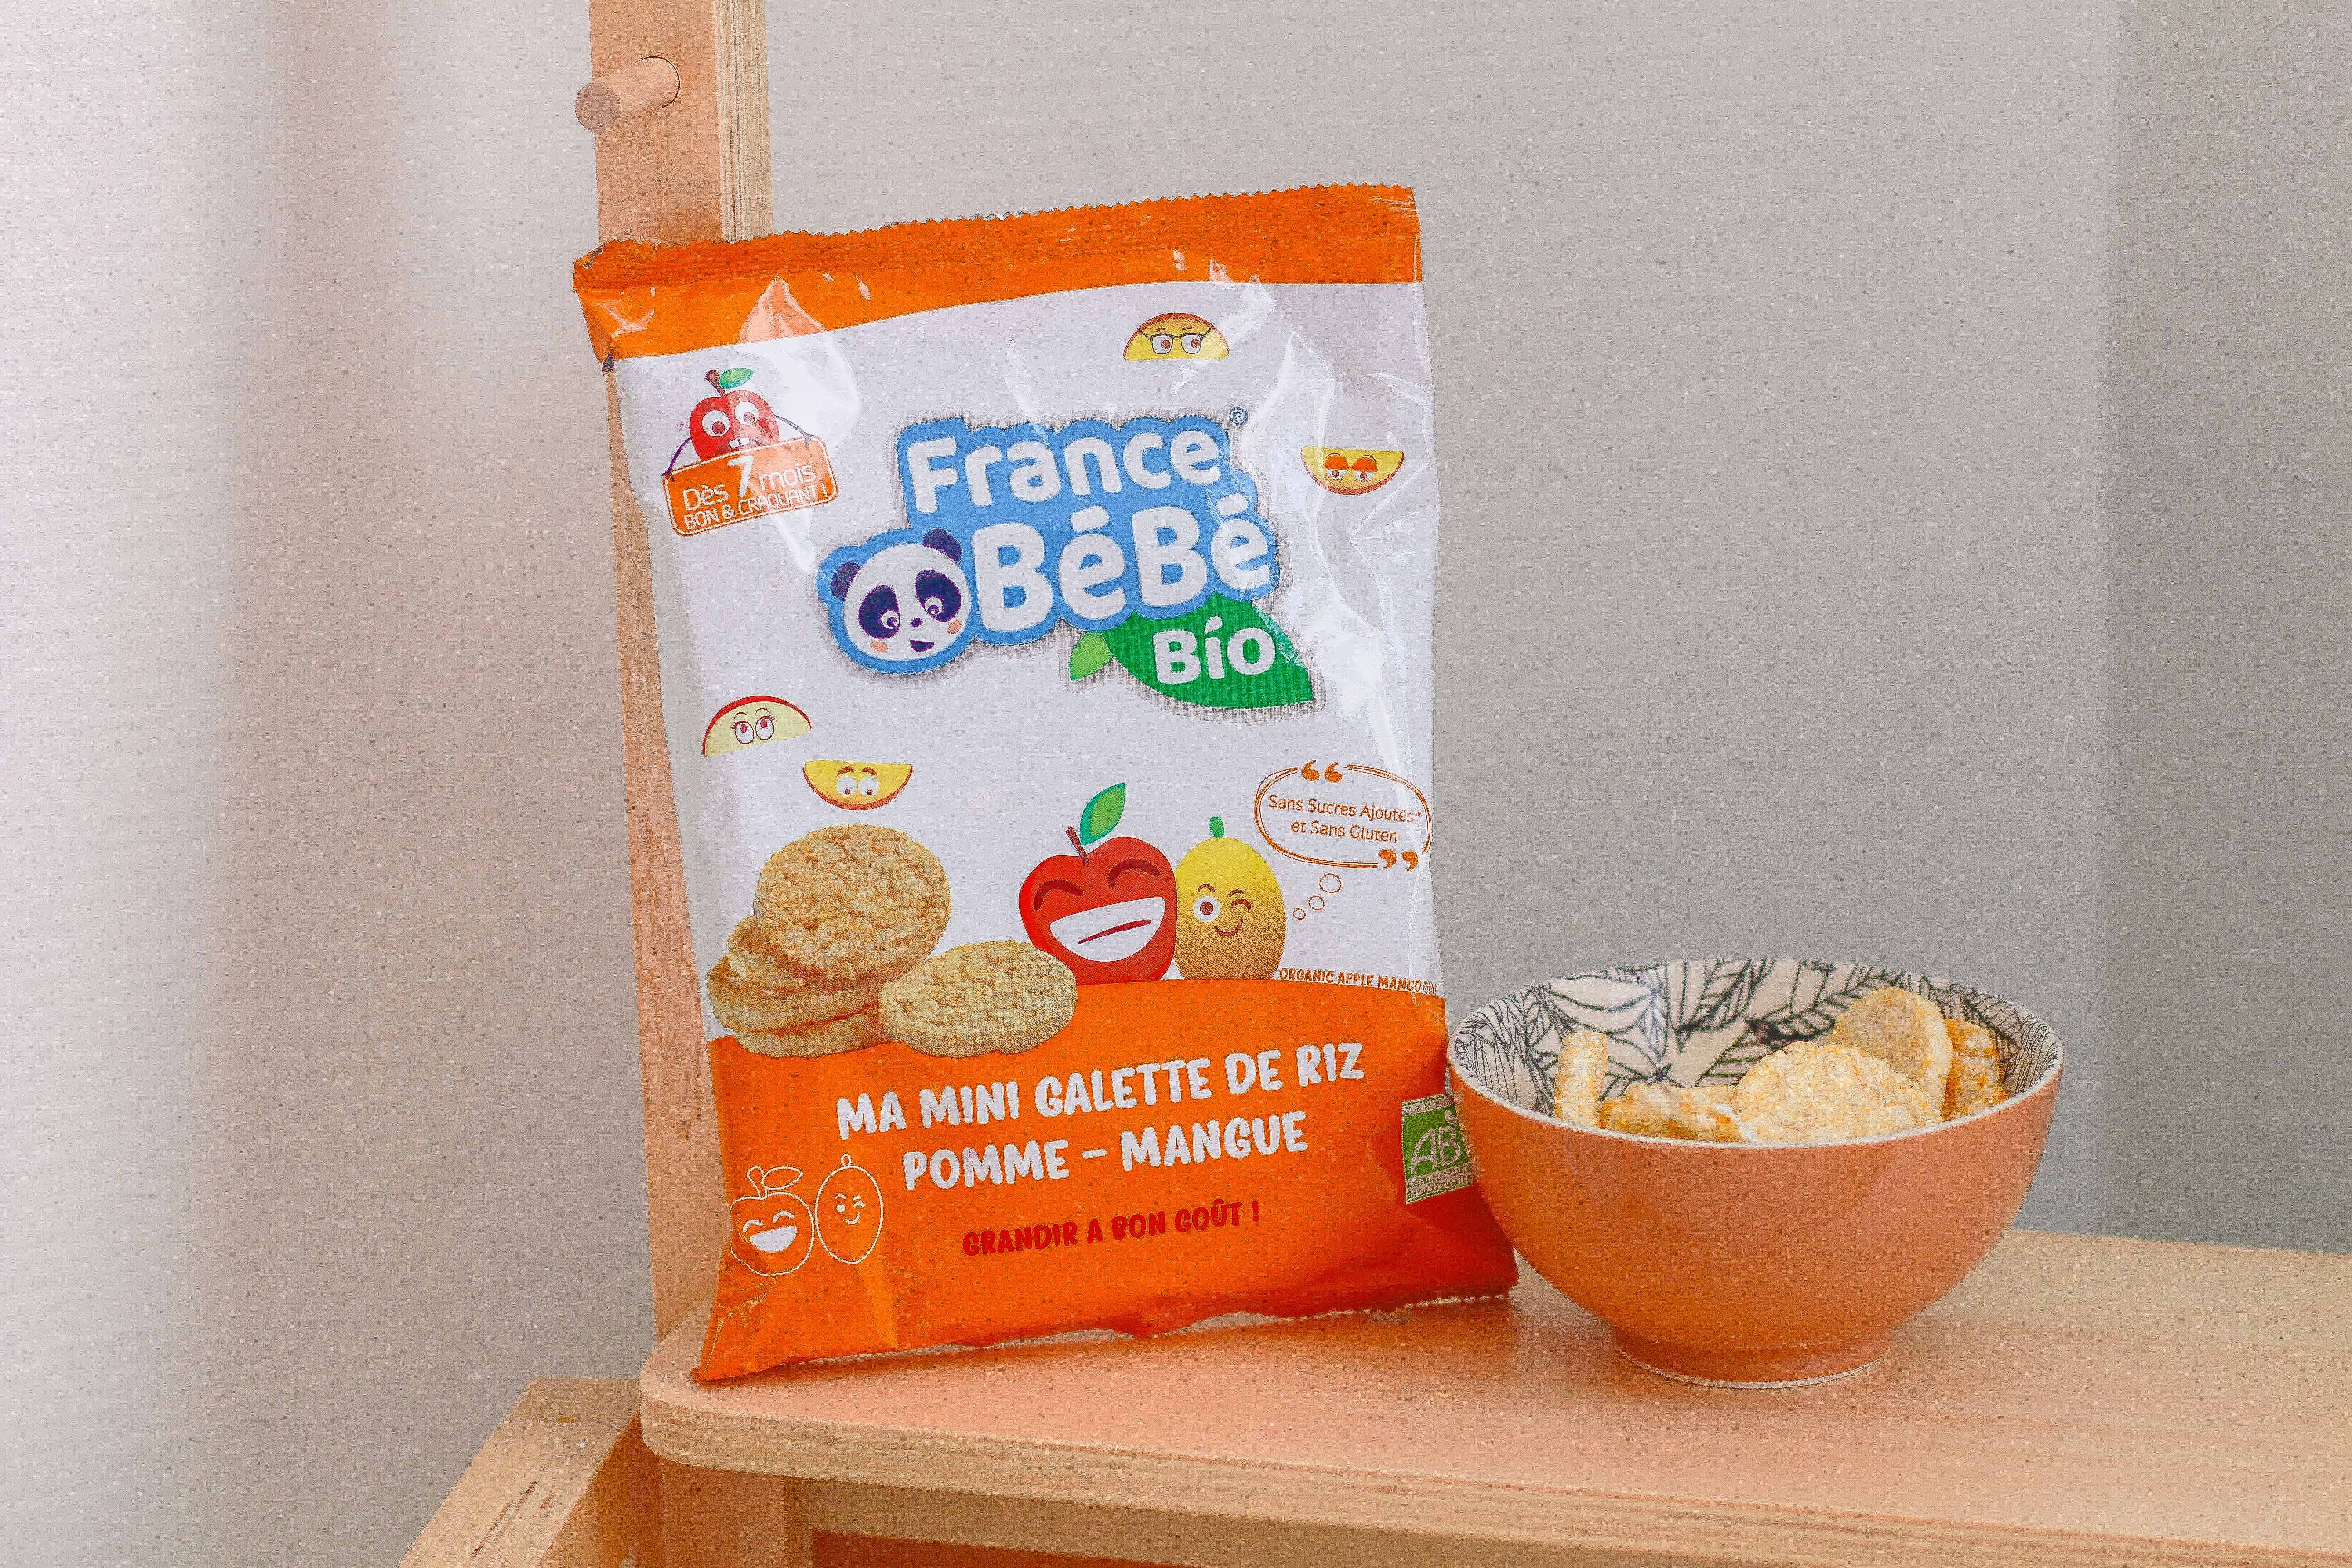 Mini galette de riz Pomme-Mangue  France bébé Bio FRANCE BéBé BIO